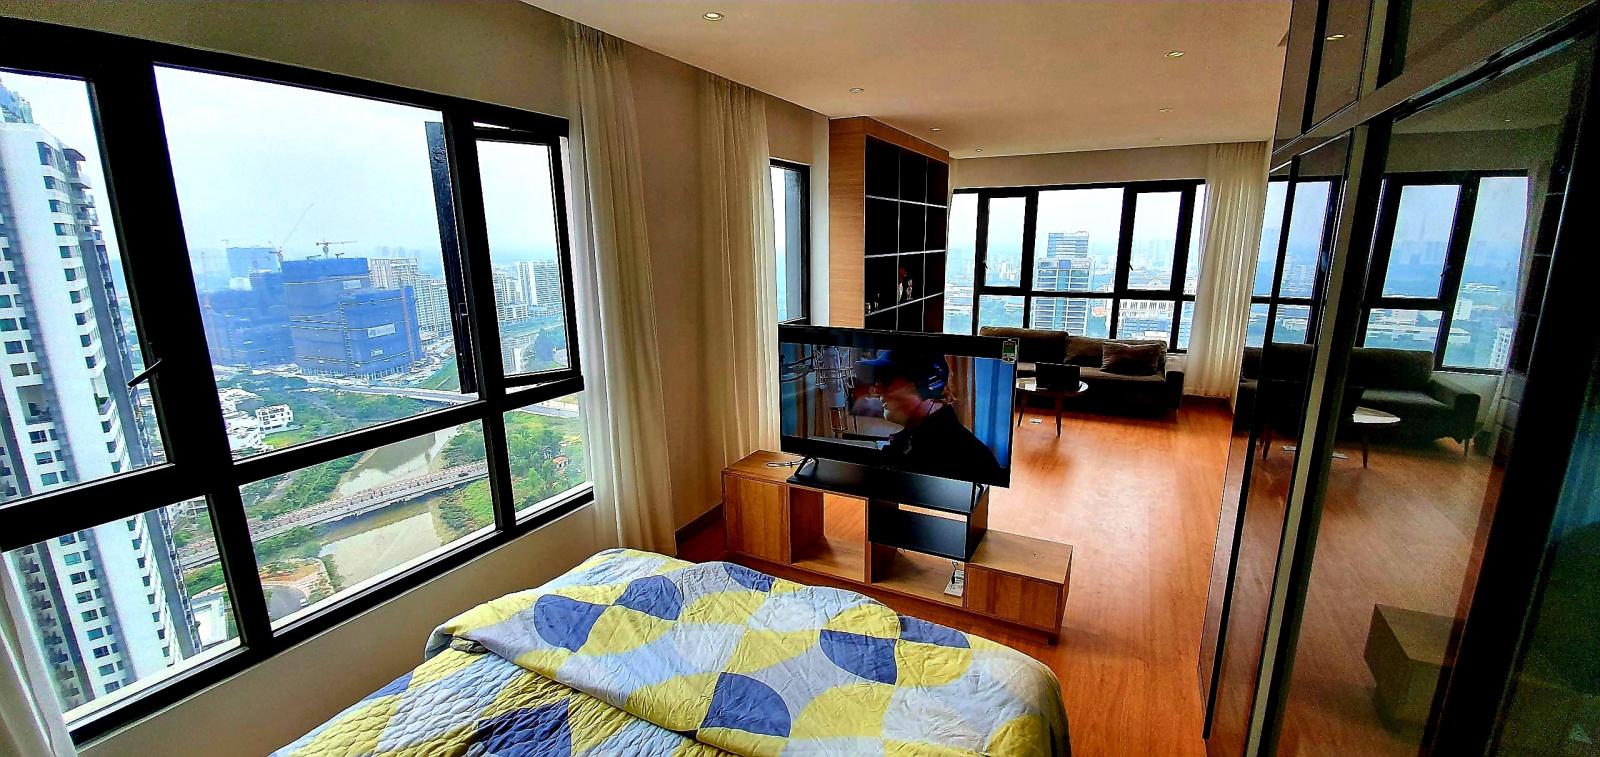 Cần cho thuê căn hộ The View Riviera Point Q7. DT 145 3PN+1 3 wc đầy đủ nội thất giá 40 triệu